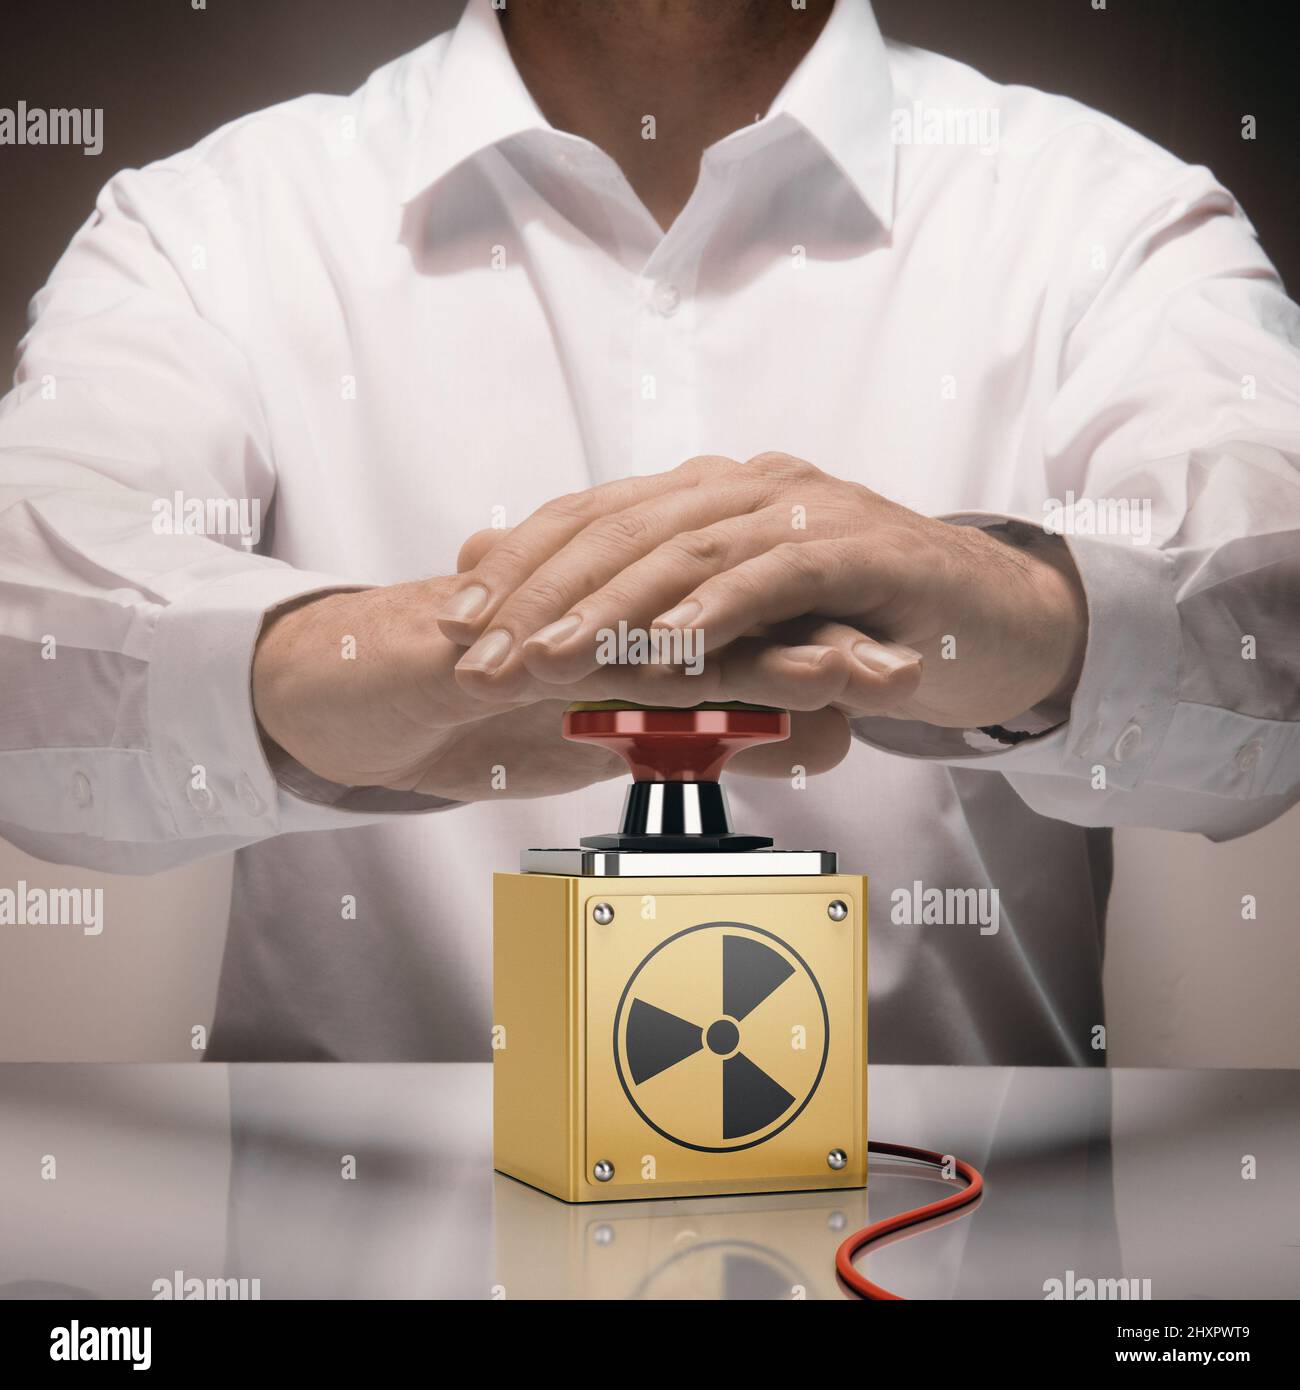 Homme appuyant sur un bouton de nuke. Concept de guerre nucléaire. Image composite entre une photographie de main et un arrière-plan de 3D. Banque D'Images